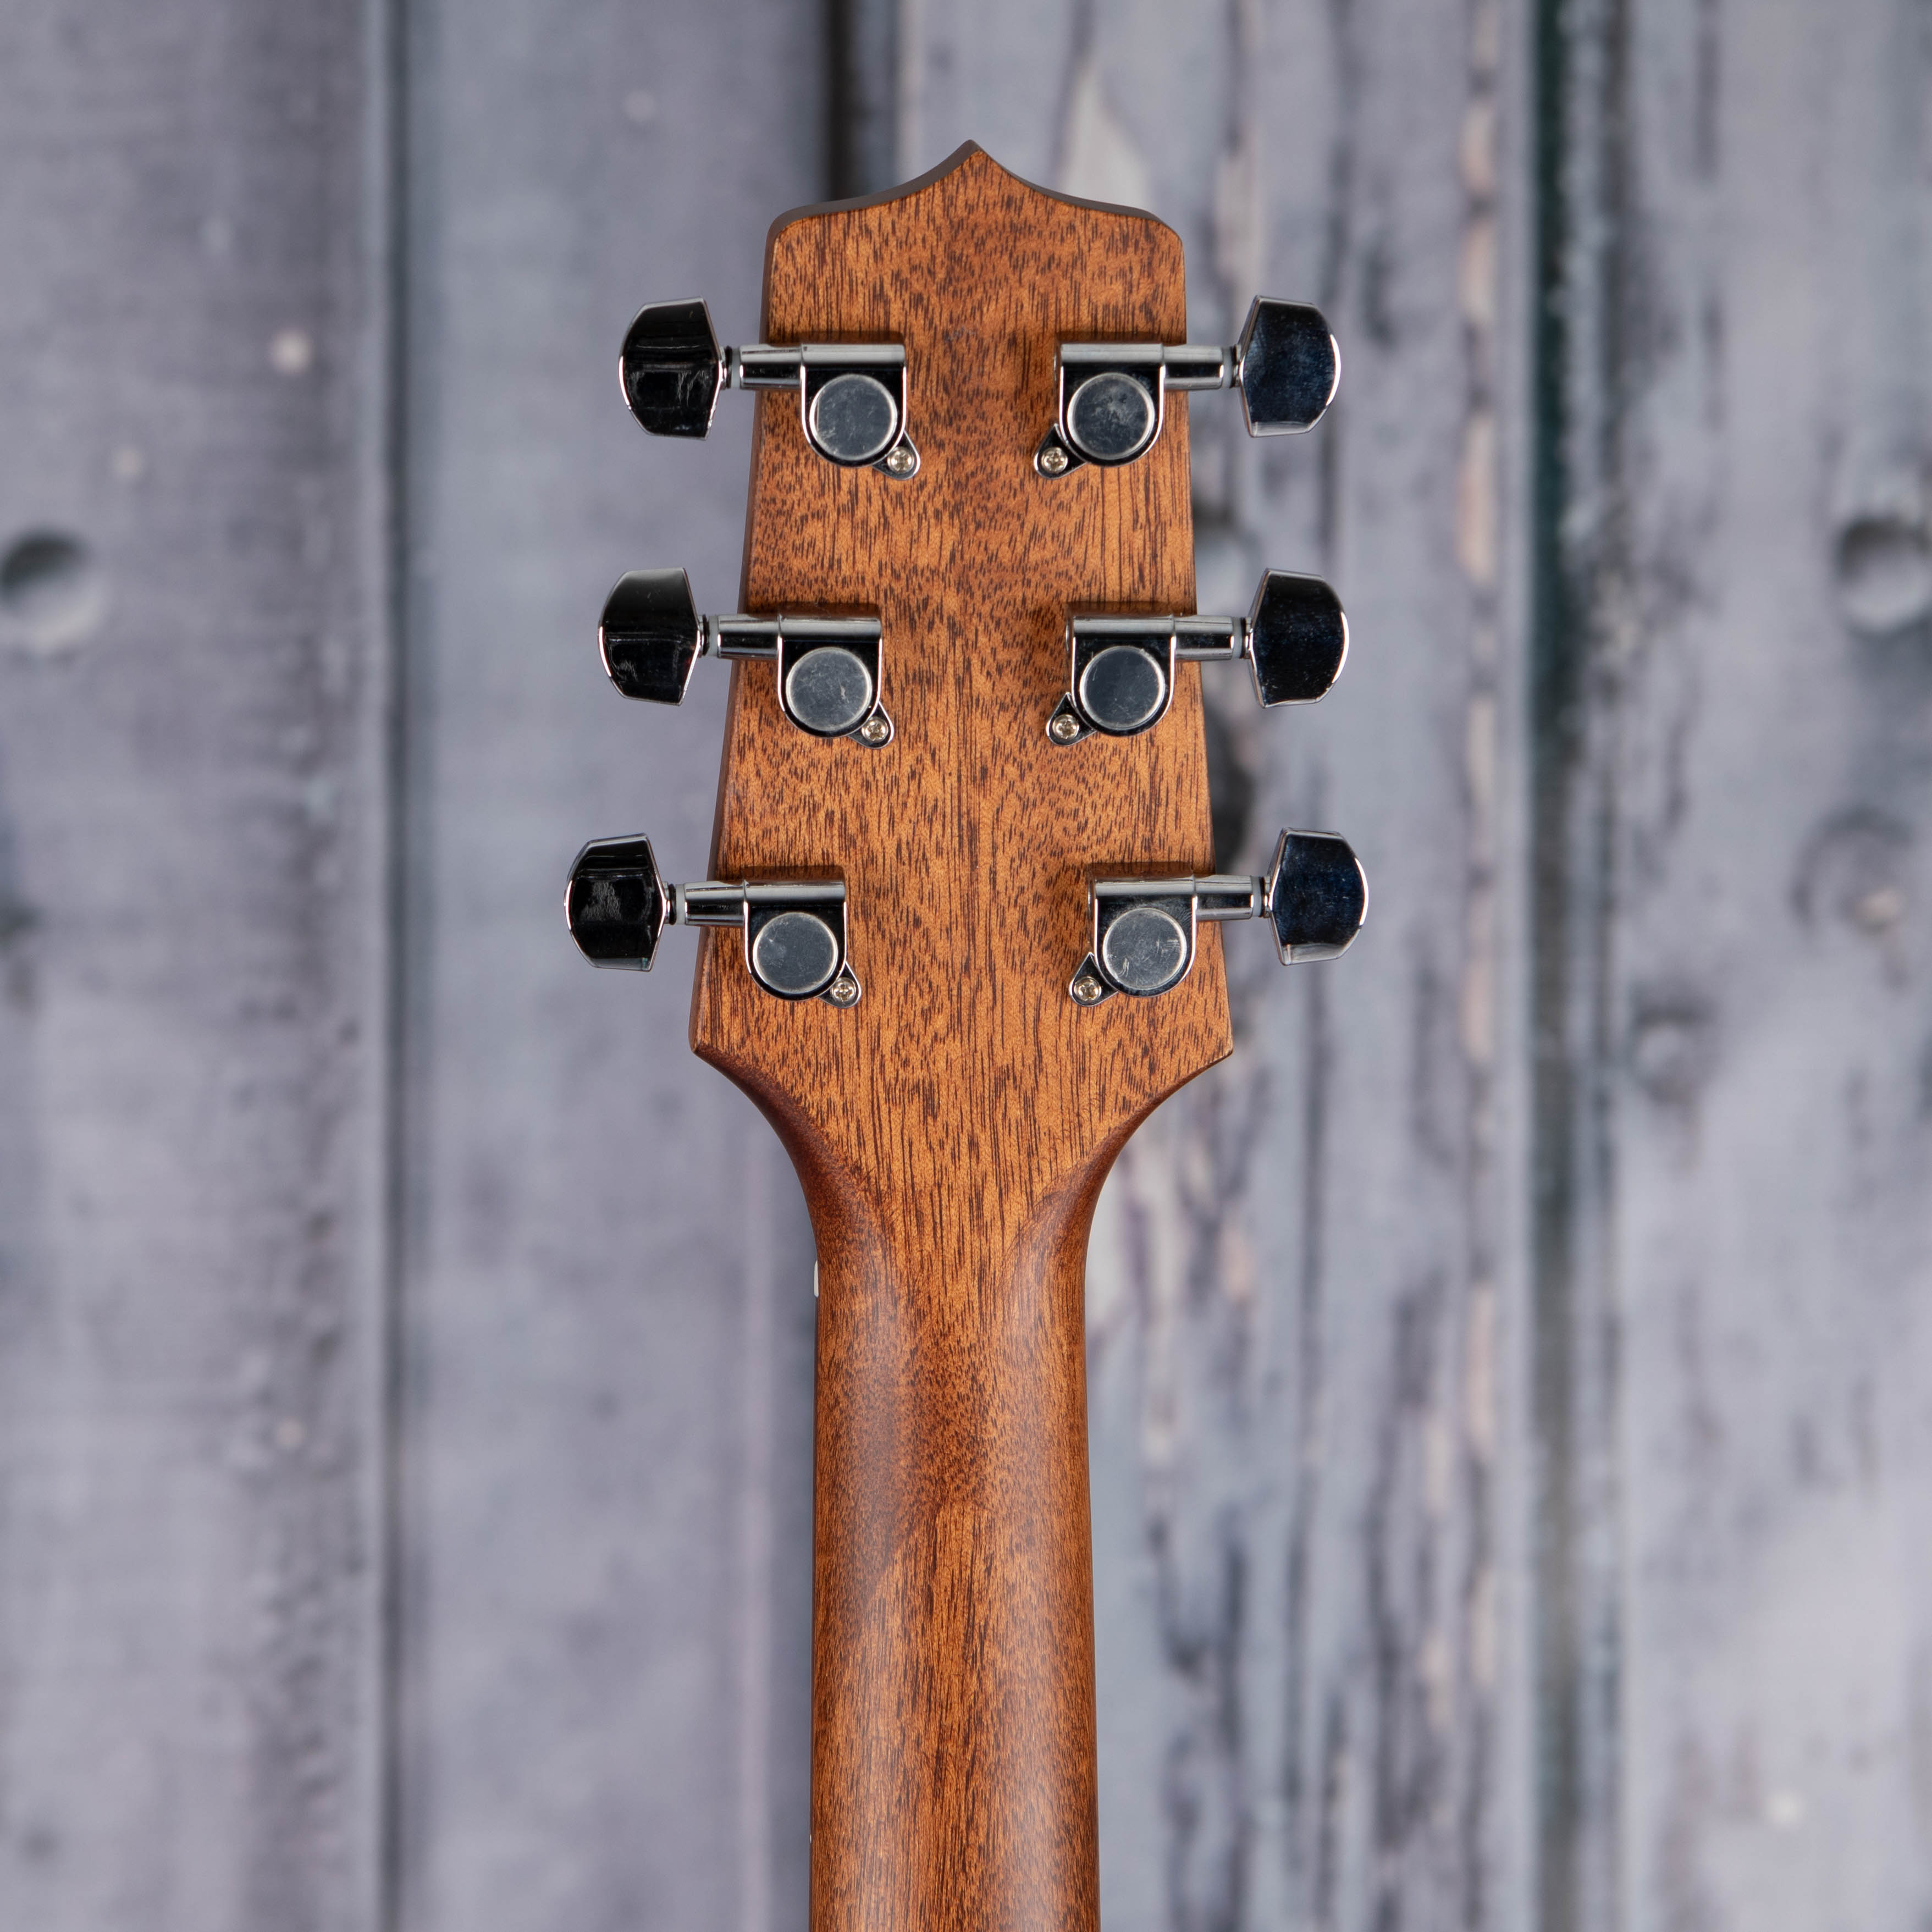 Takamine GD30-NAT Left-Handed Acoustic Guitar, Natural, back headstock